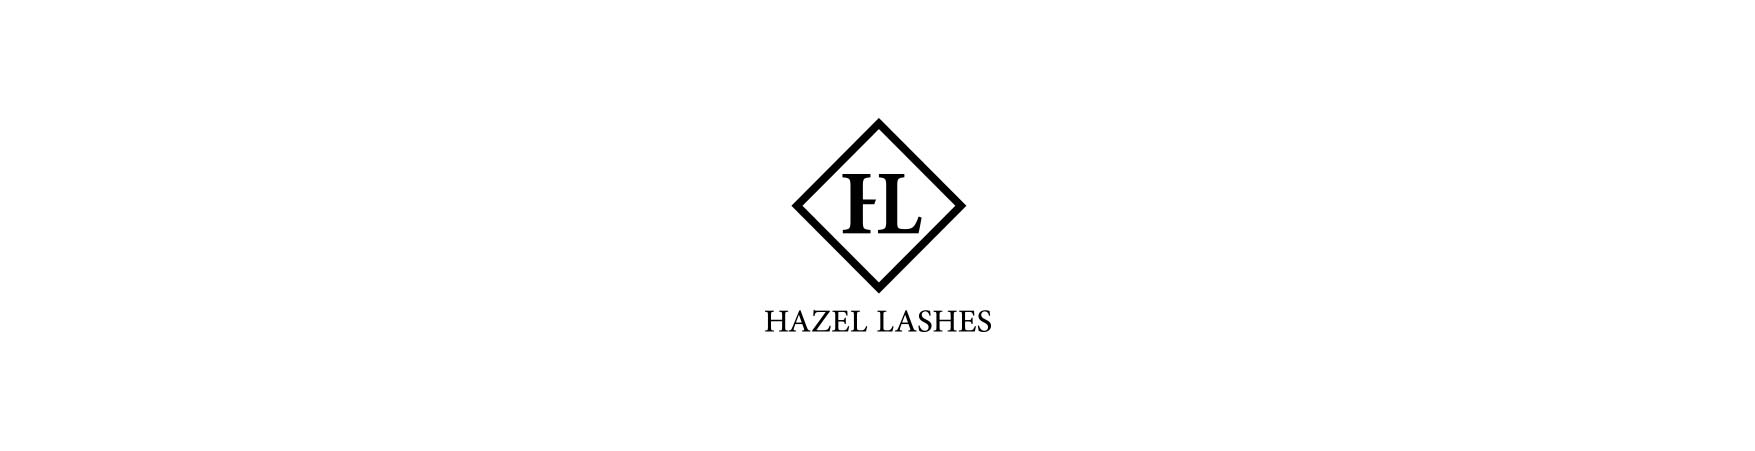 Hazel Lashes